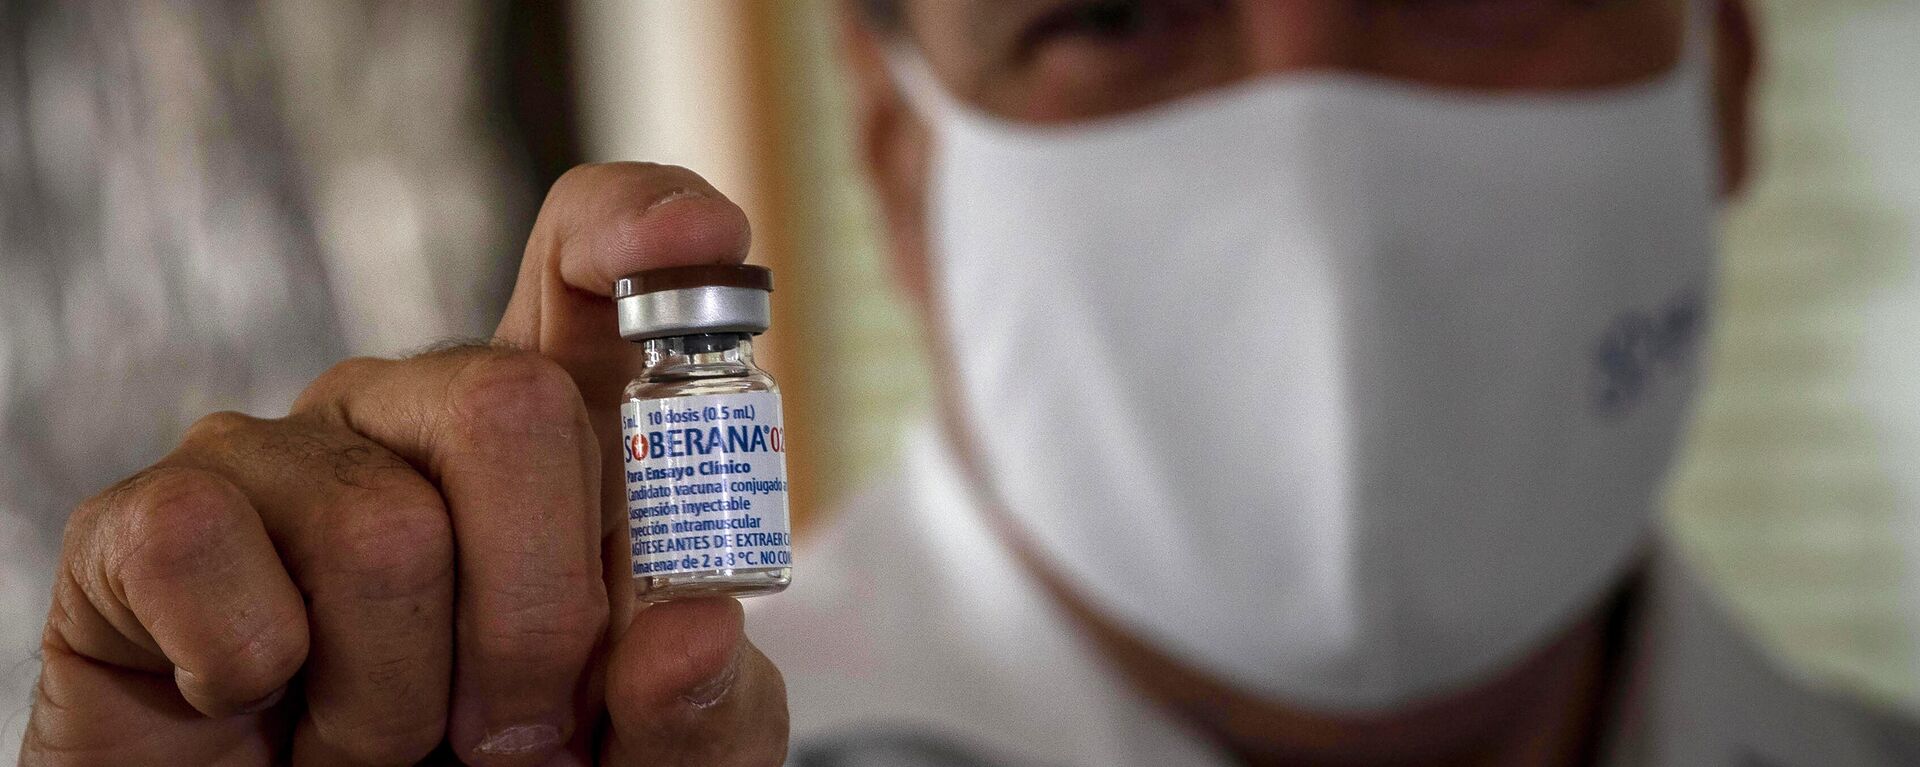 Un médico sostiene la vacuna cubana Soberana 02 contra COVID-19 - Sputnik Mundo, 1920, 07.09.2021